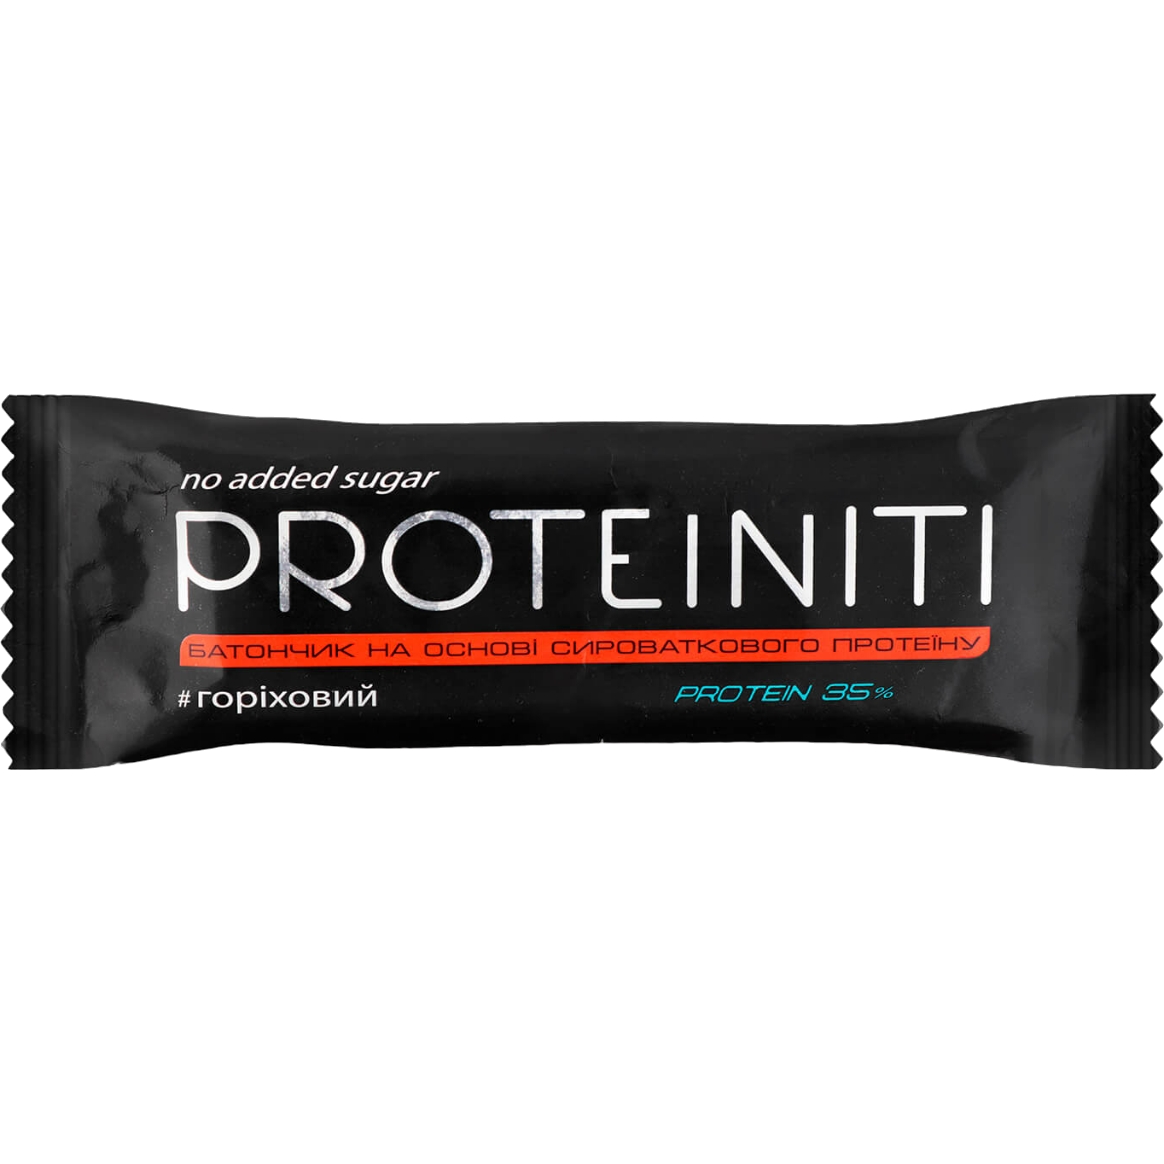 Протеиновый батончик Proteiniti Ореховый 40 г - фото 1